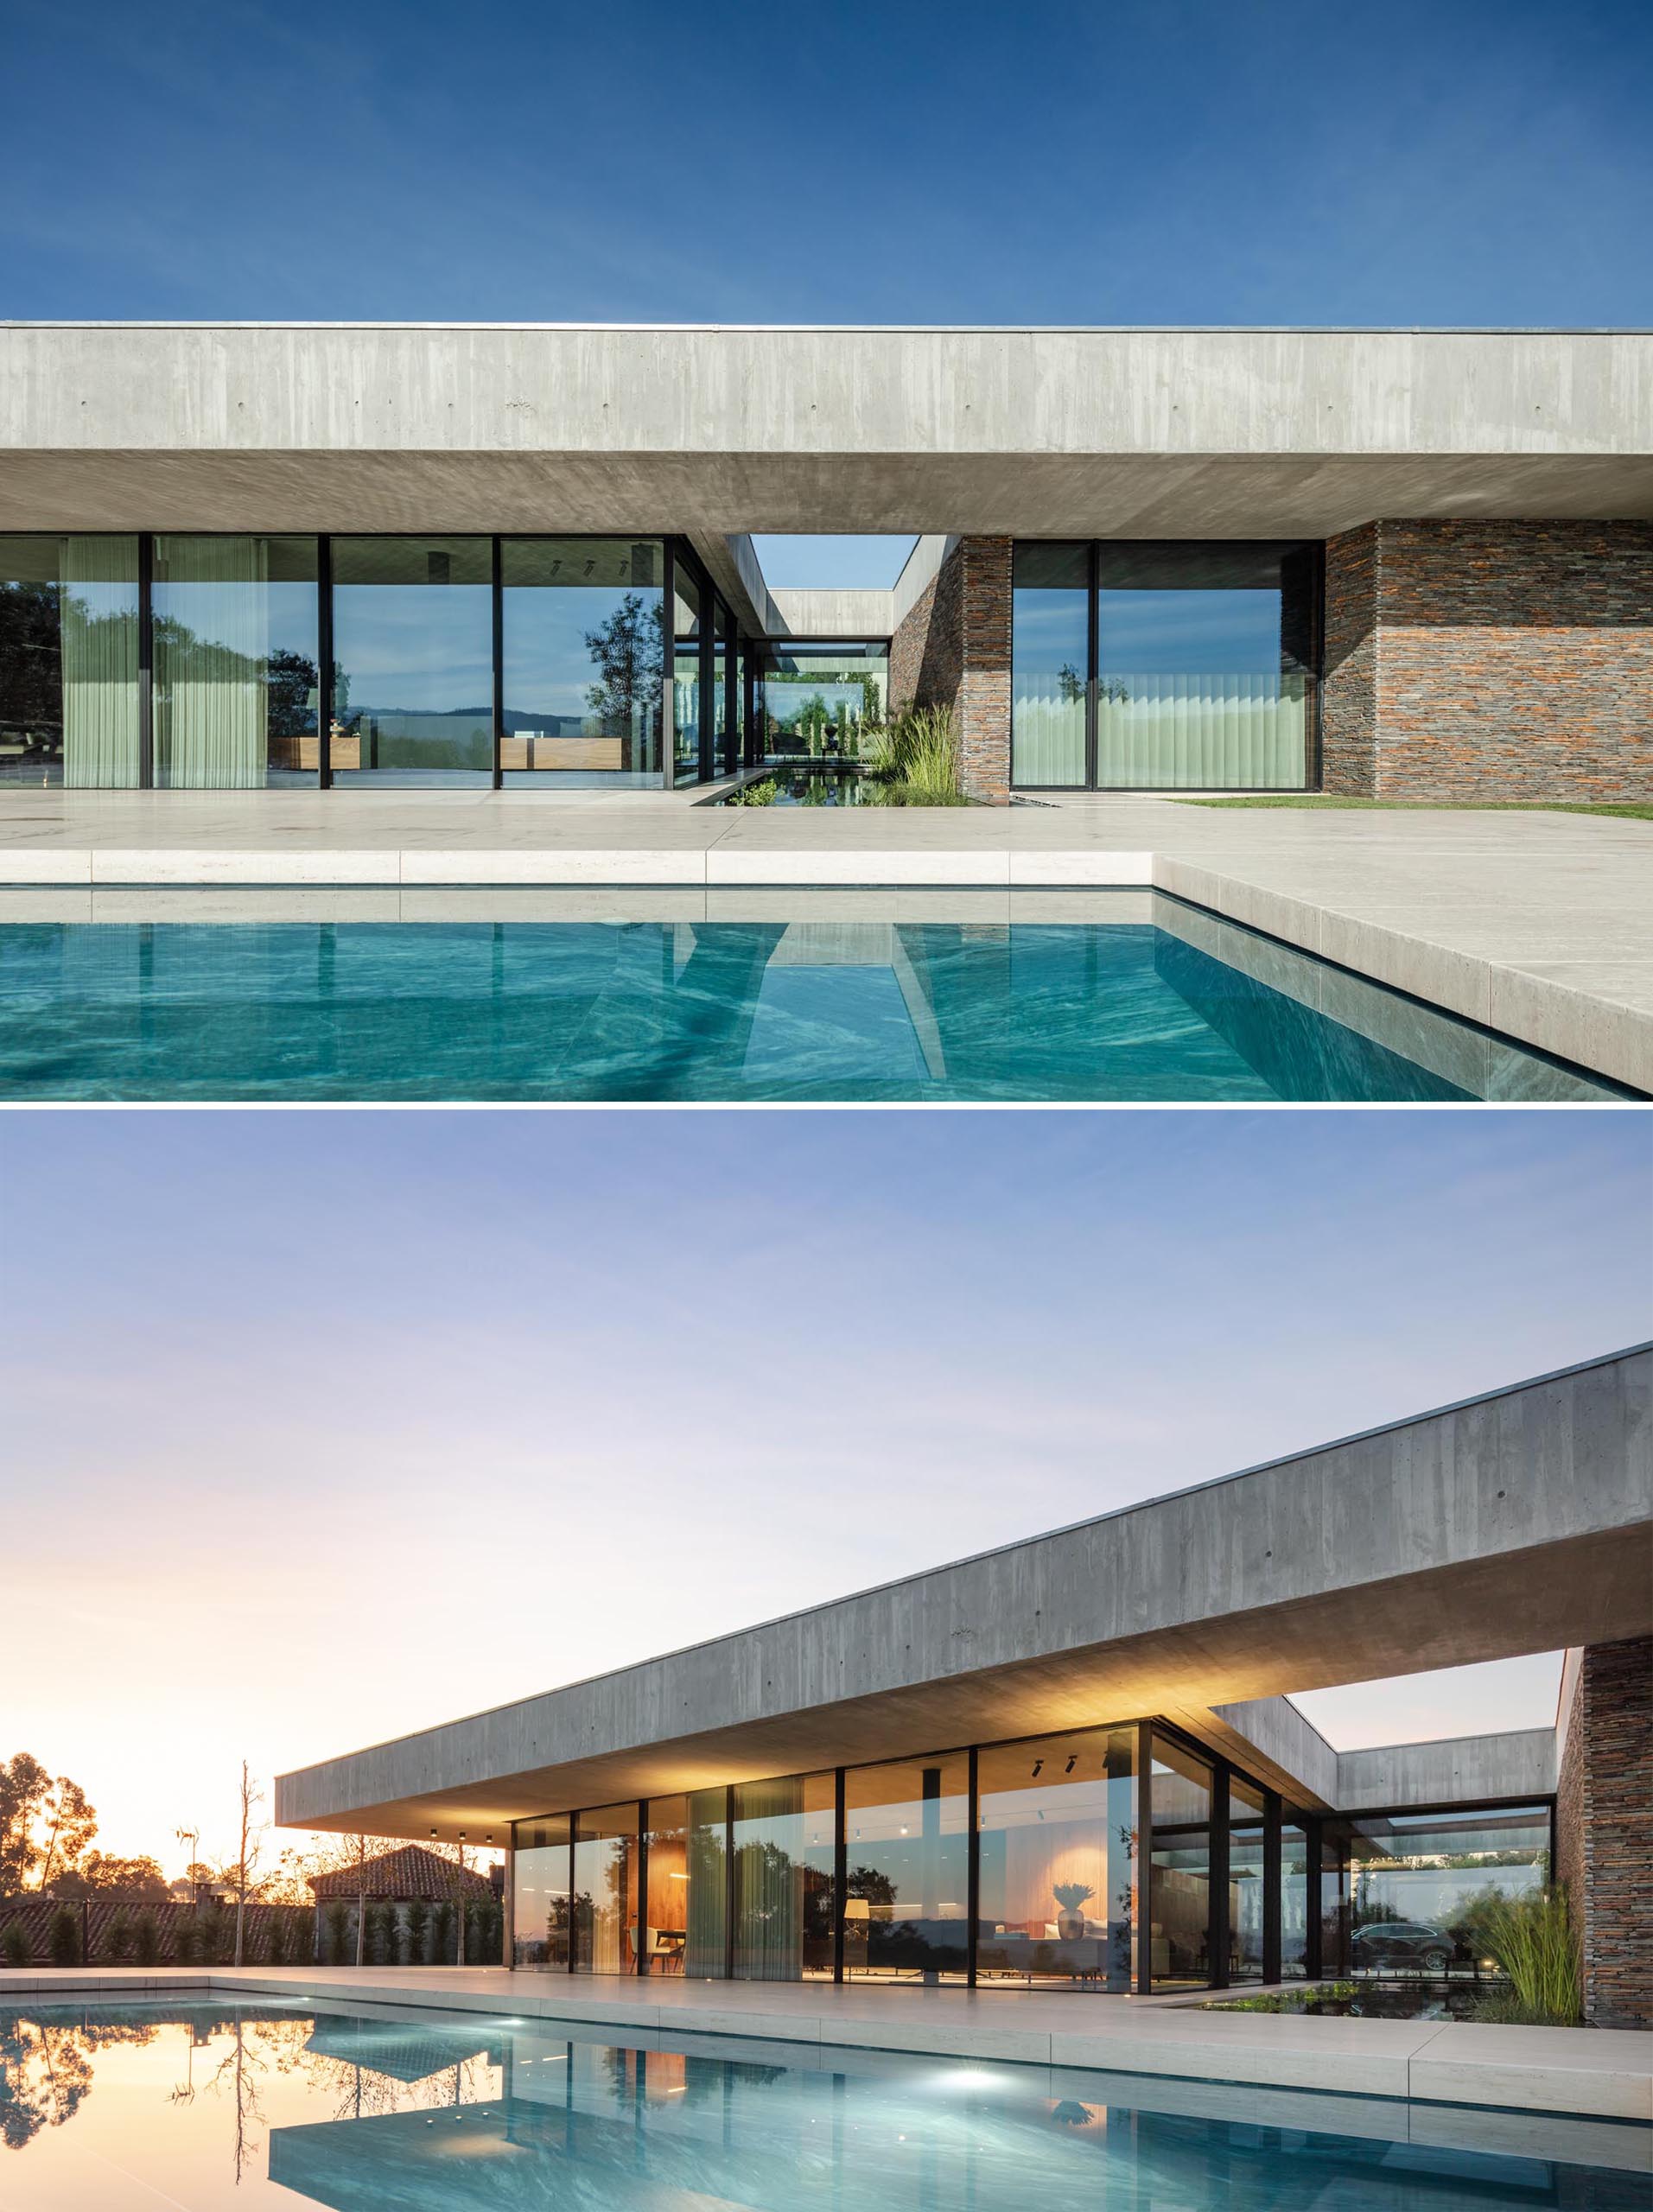 Một ngôi nhà bê tông hiện đại với tường kính, sân trong rộng và hồ bơi.